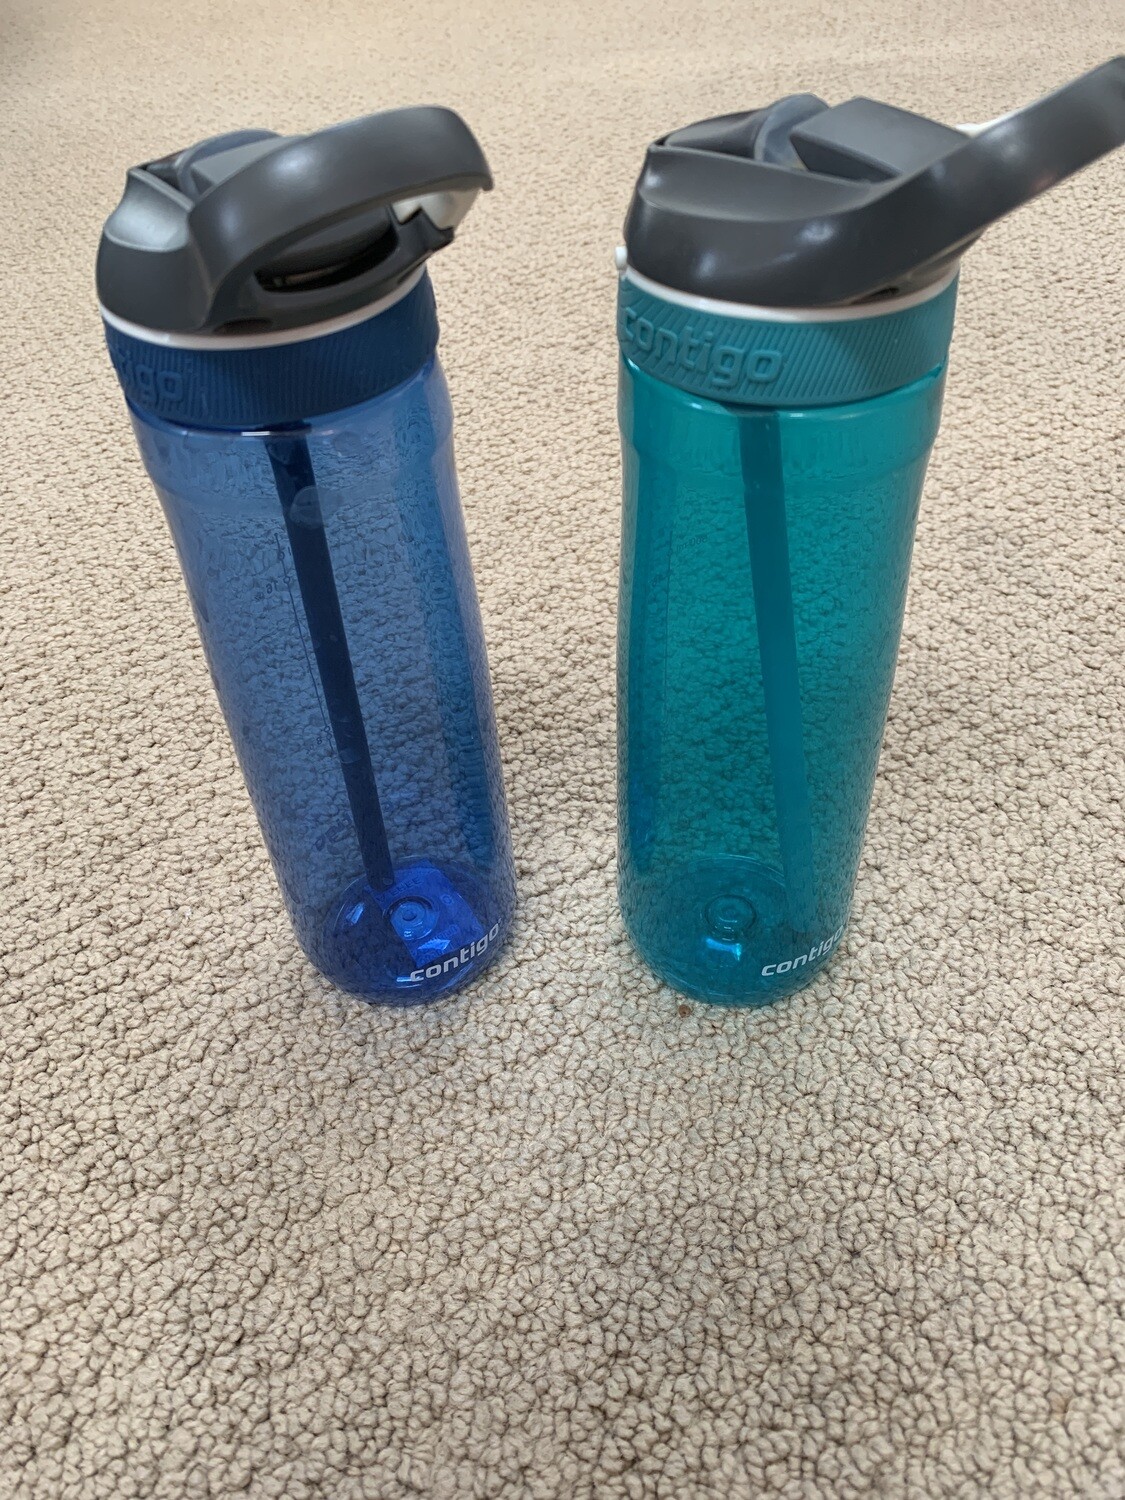 2 Contigo bottles